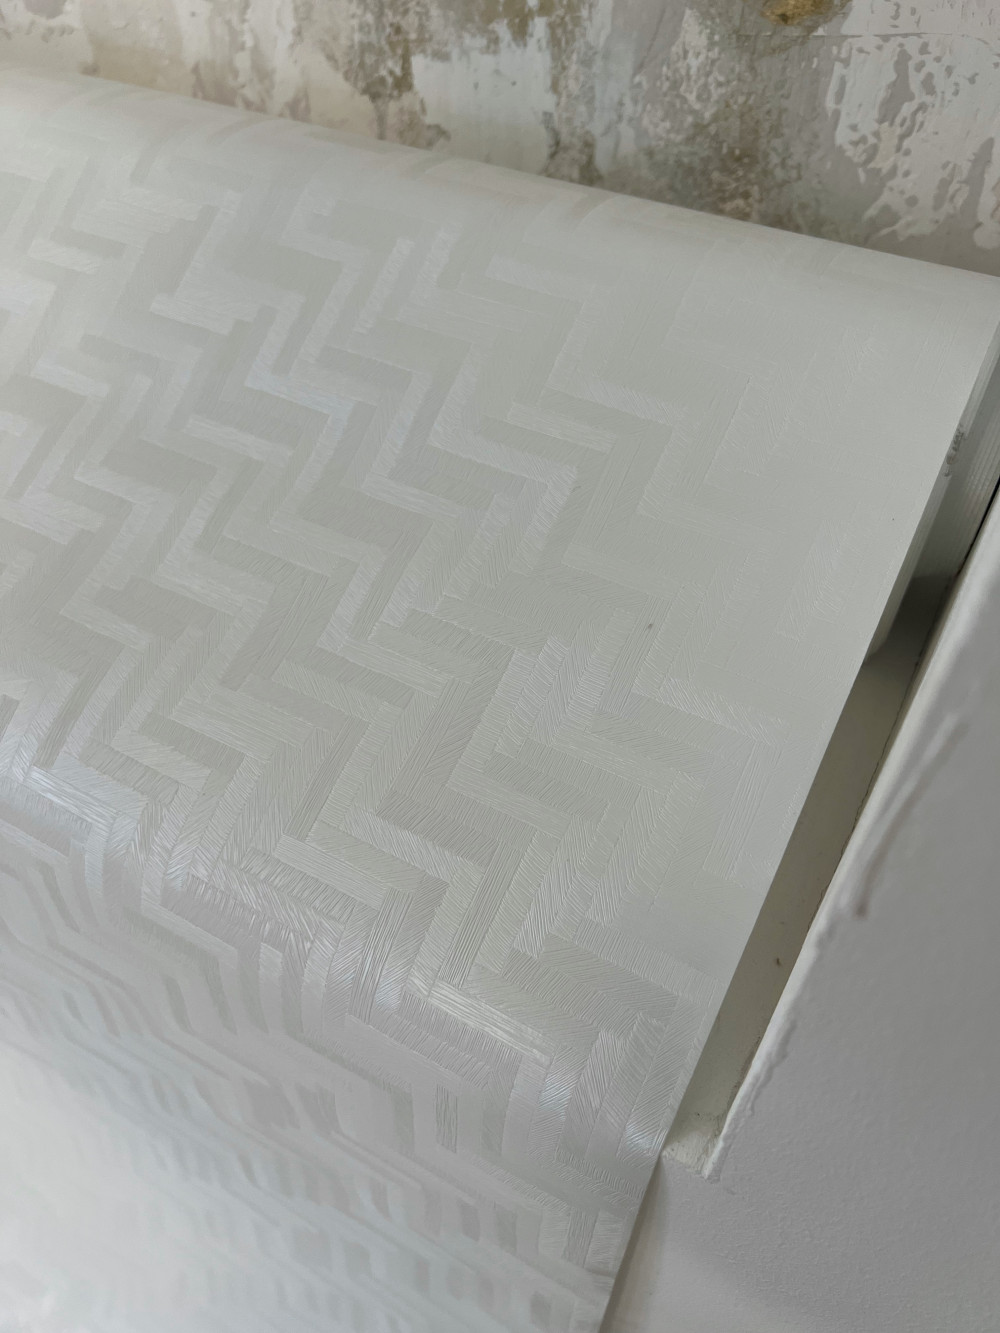 Viaszos vászon asztalterítő Új fényes fehér Labirintus fényes  140cm széles